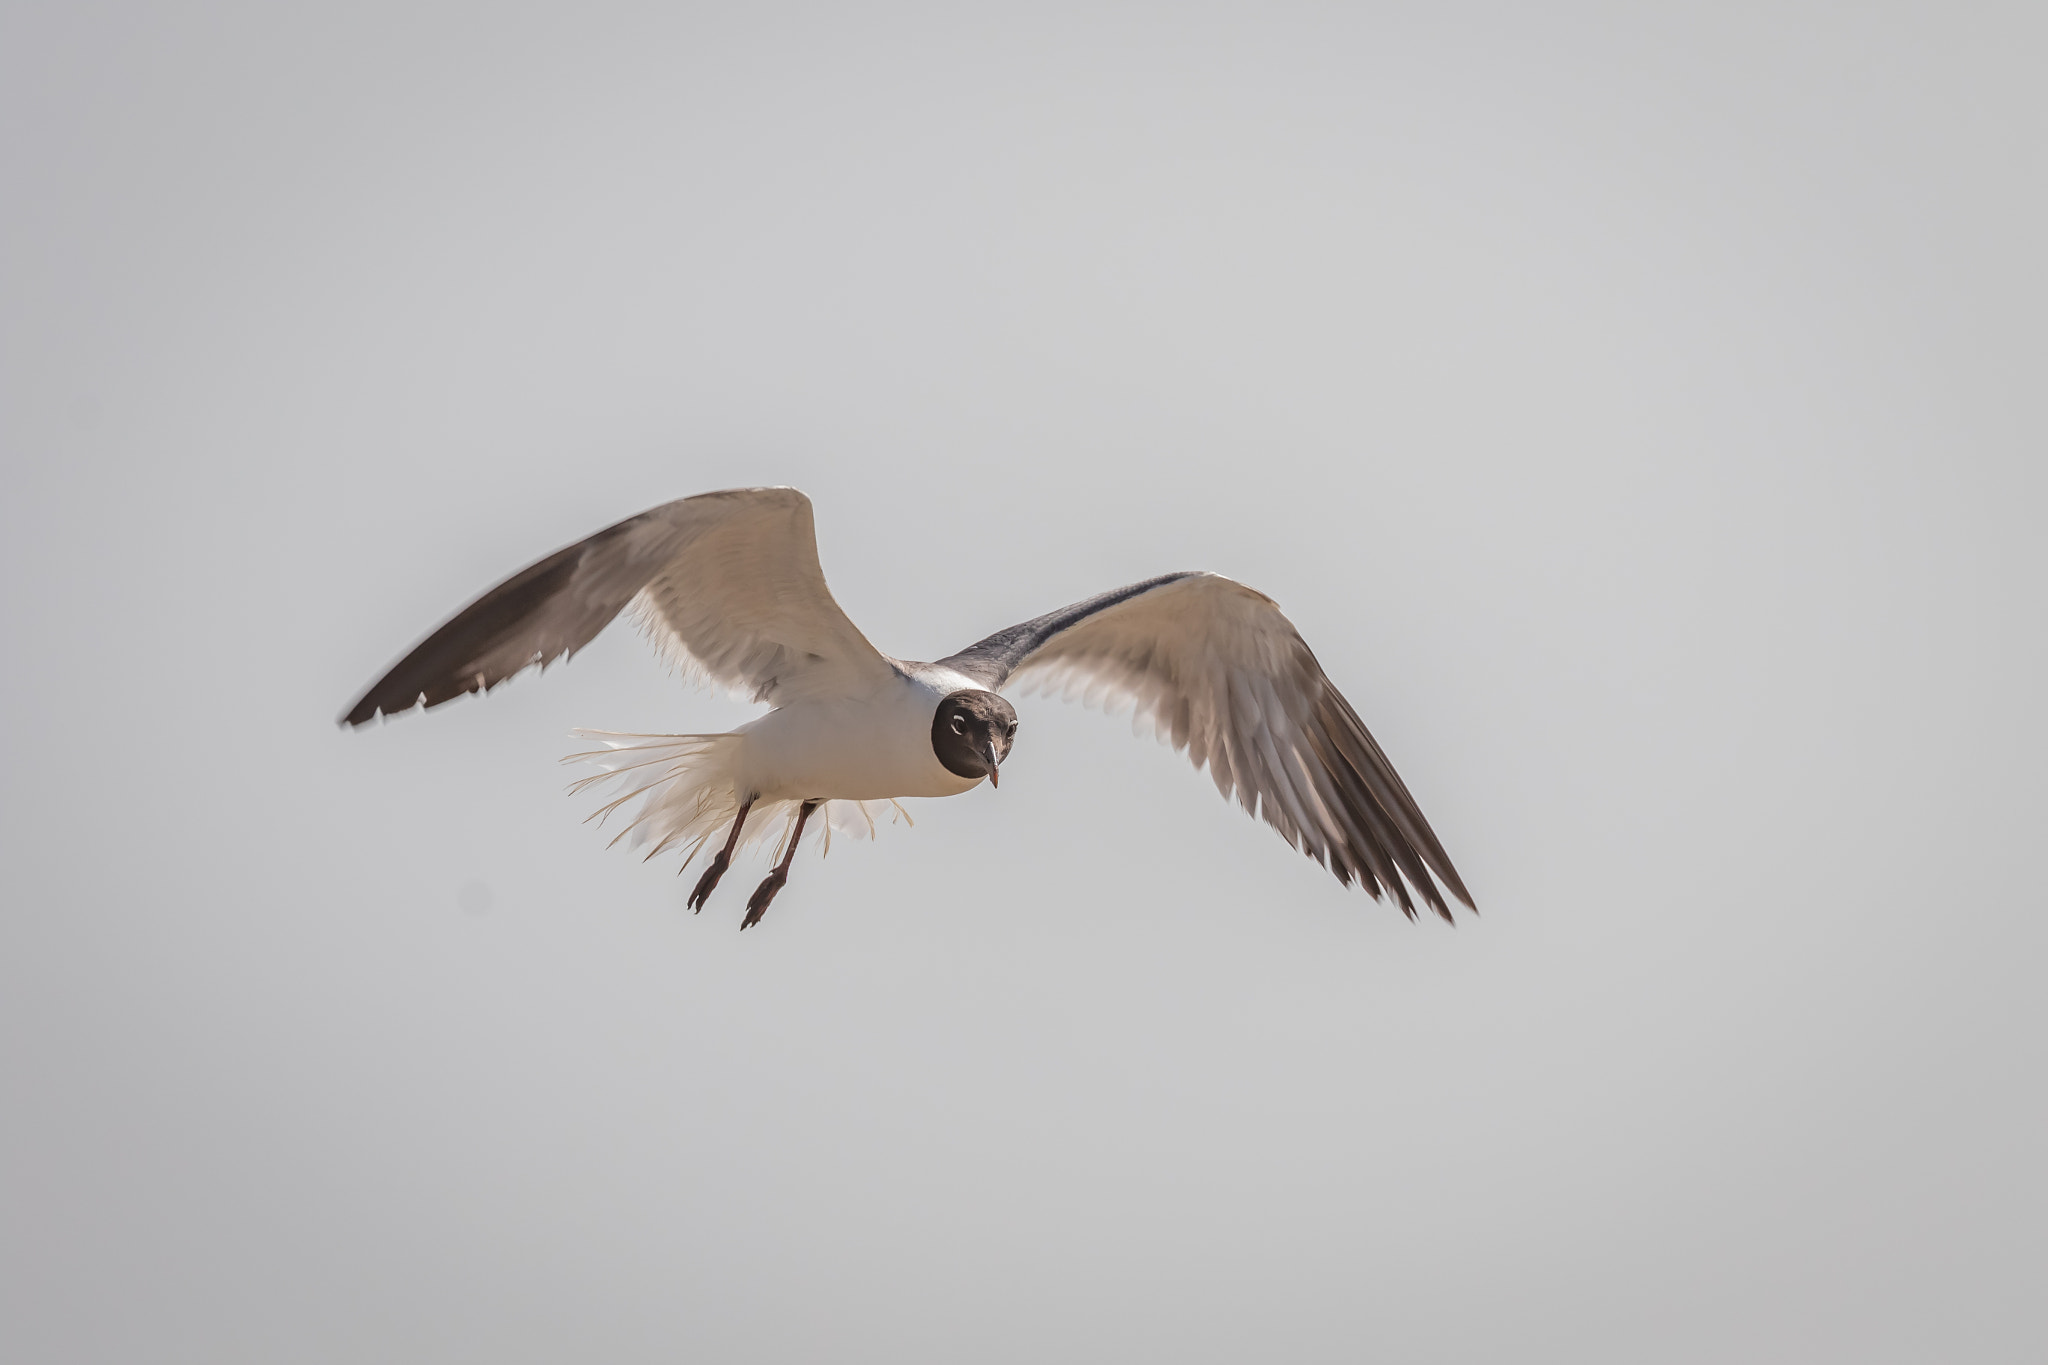 Laughing Gull (Leucophaeus atricilla) in flight.